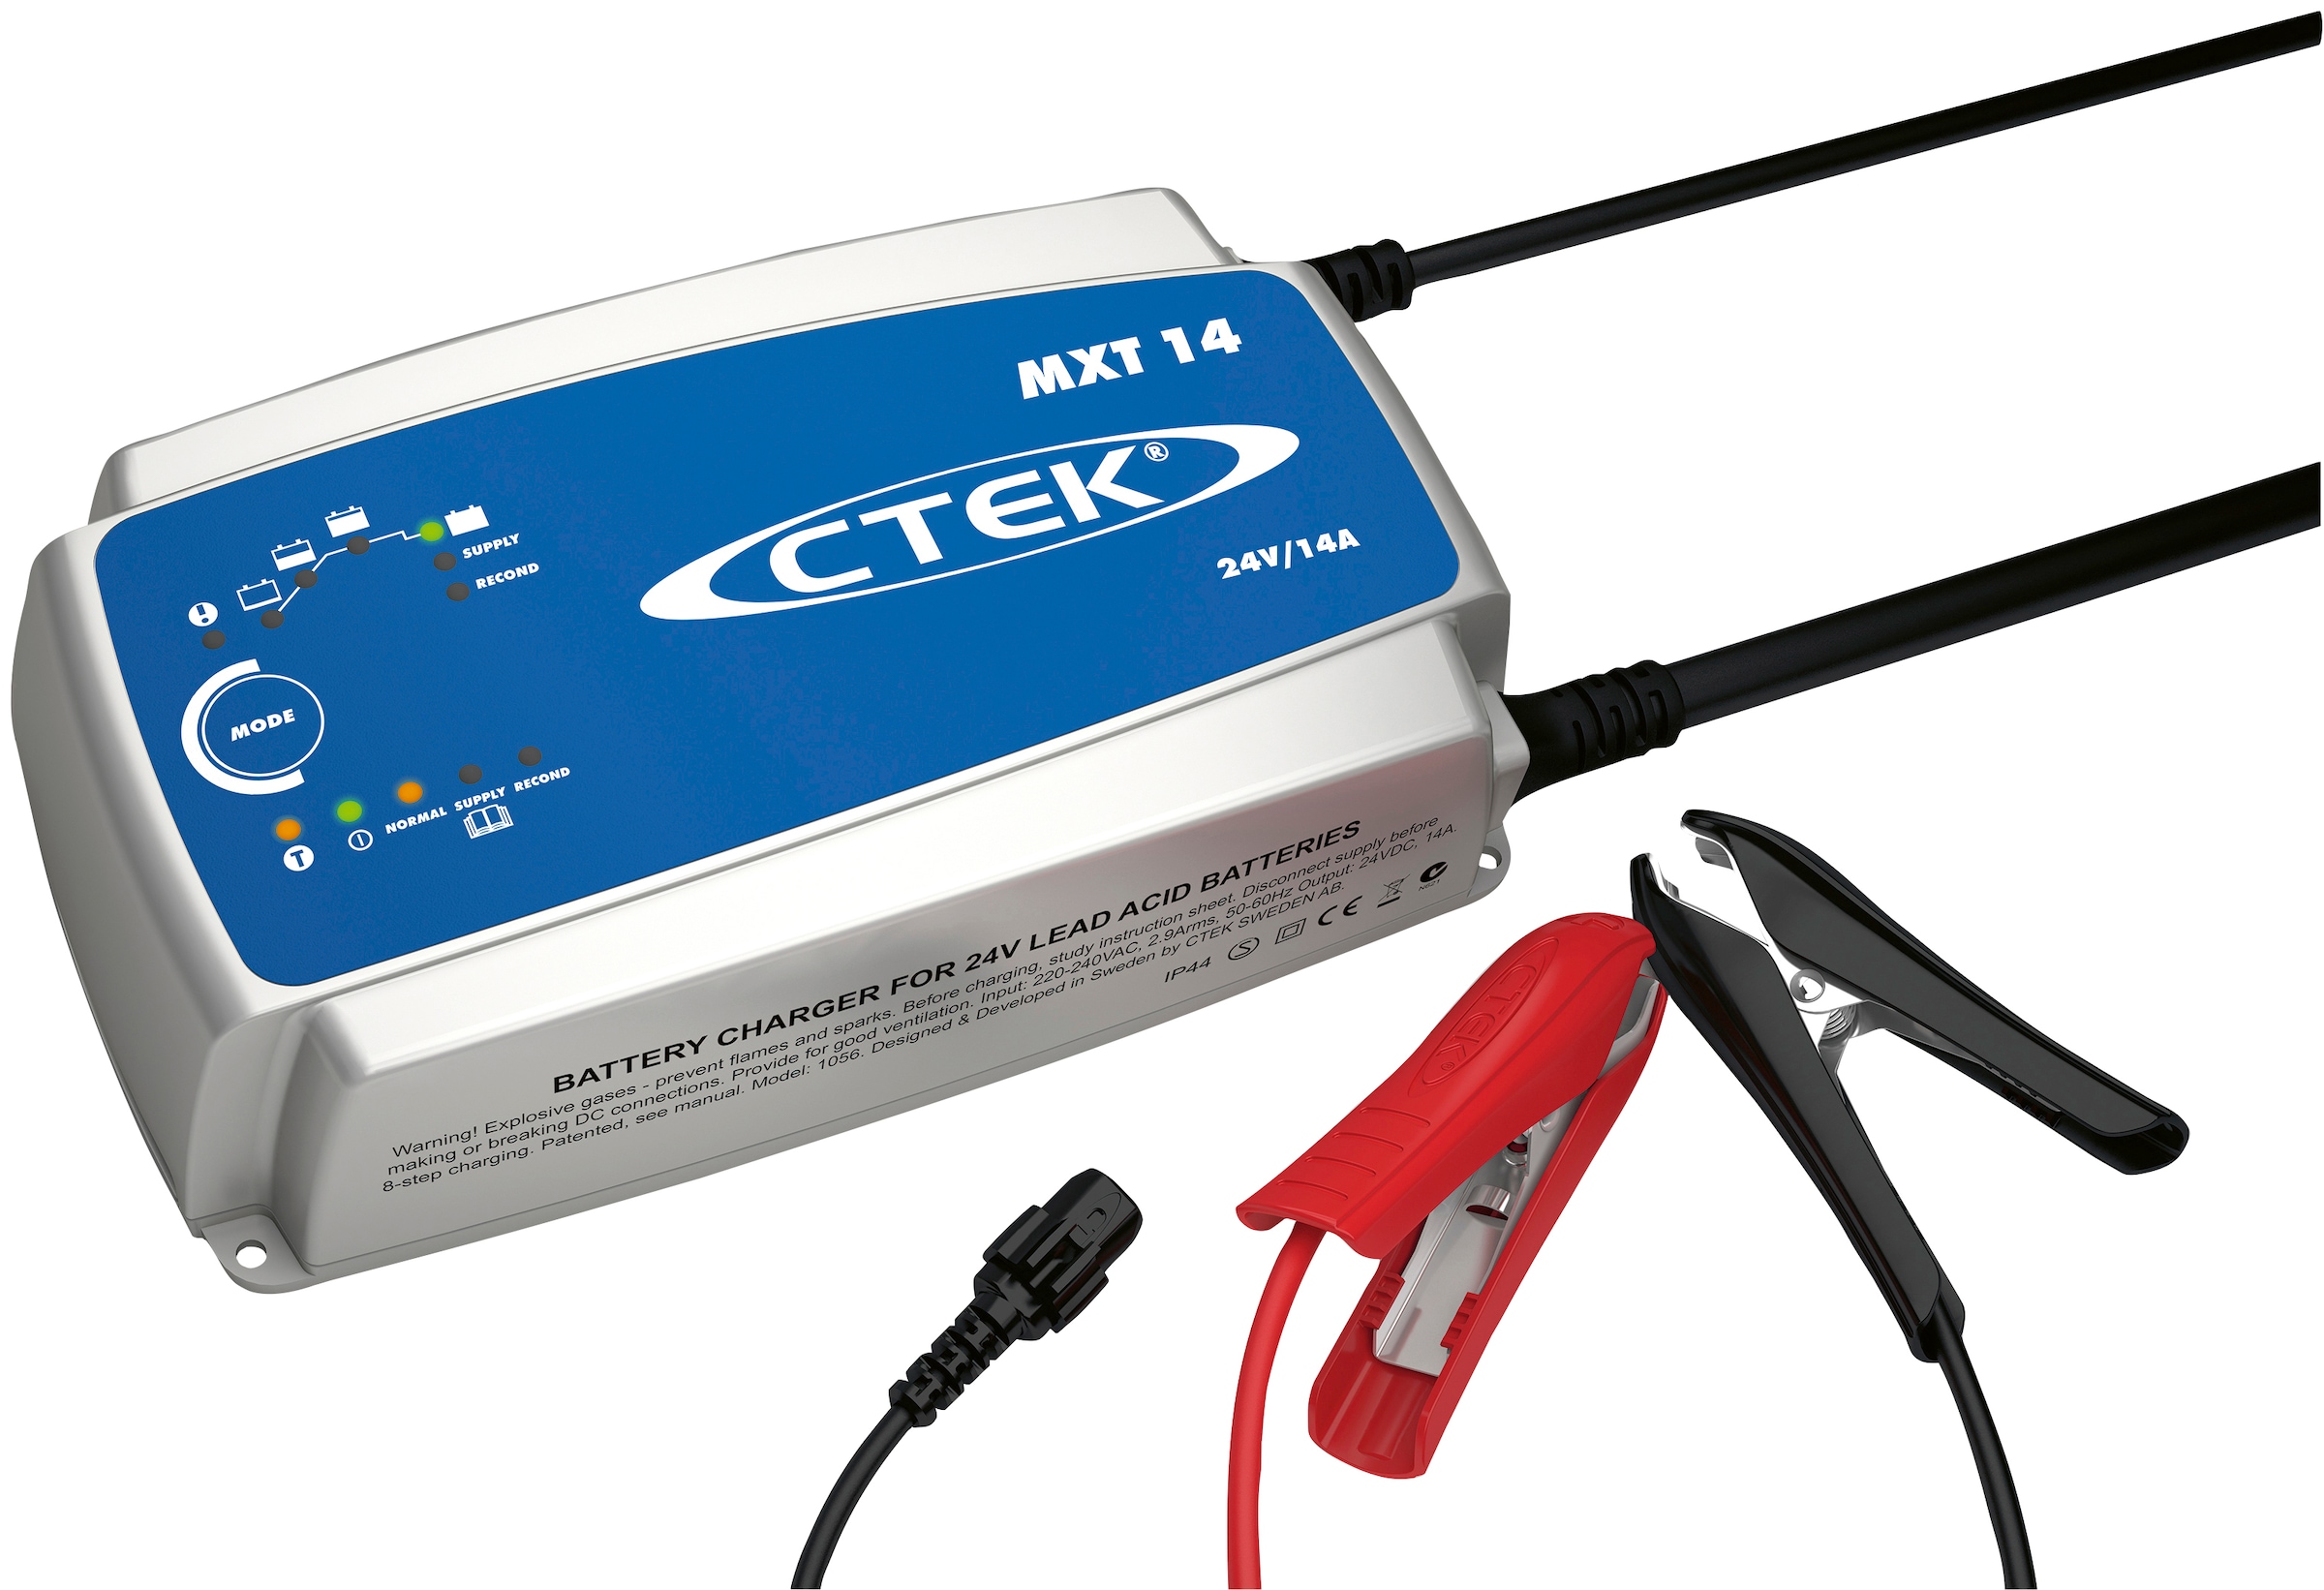 Batterie-Ladegerät »MXT 14«, Kann als Stromversorgung verwendet werden